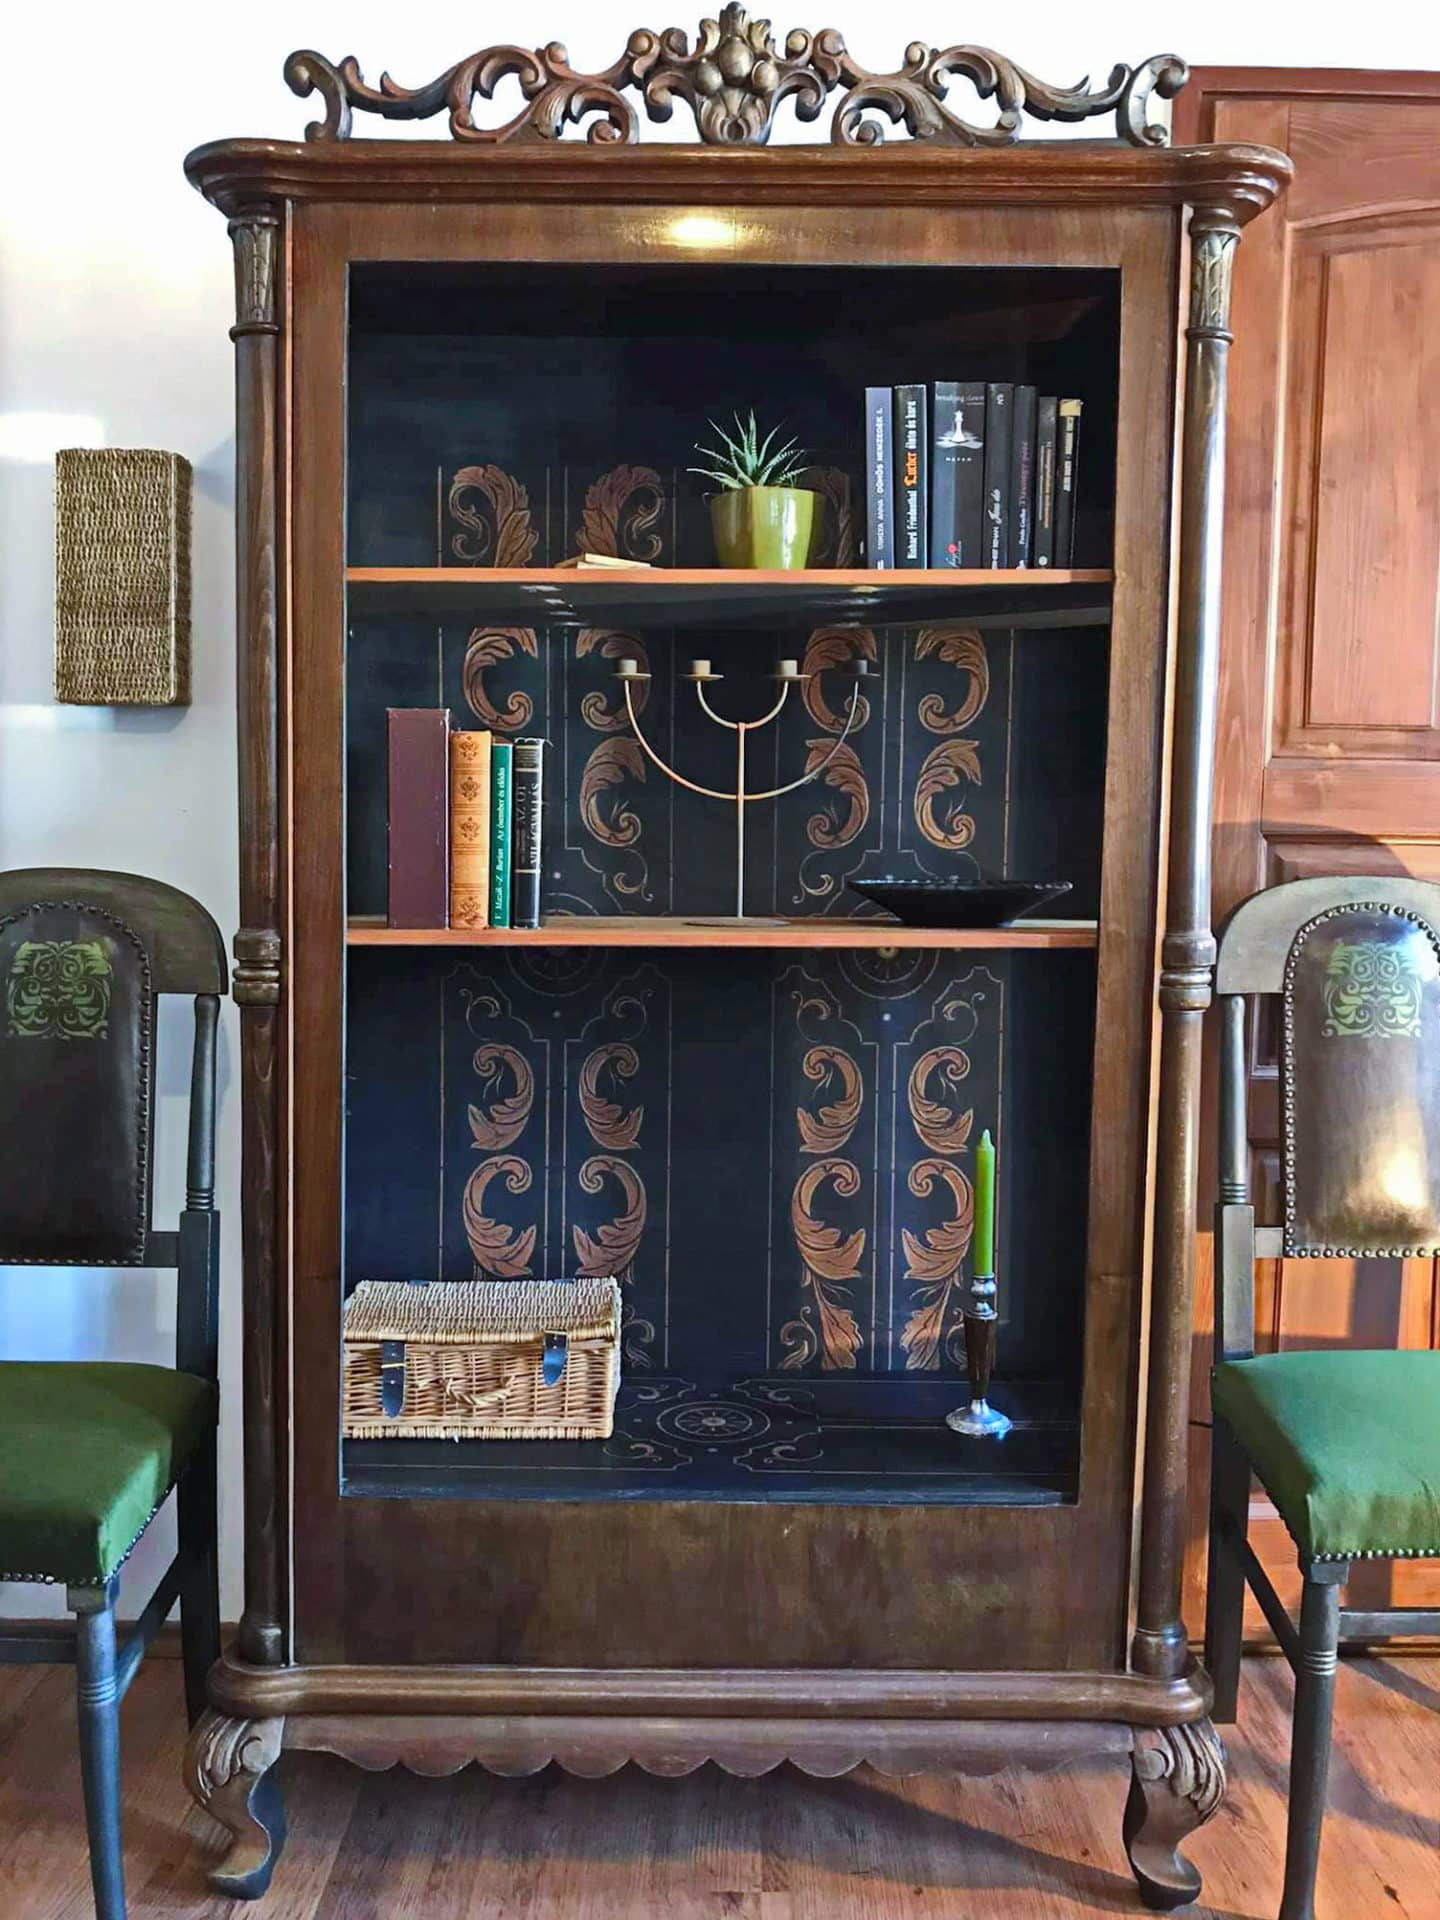 Felújított antik szekrény Annie Sloan festékekkel, waxokkal - Marina bútorfestő által